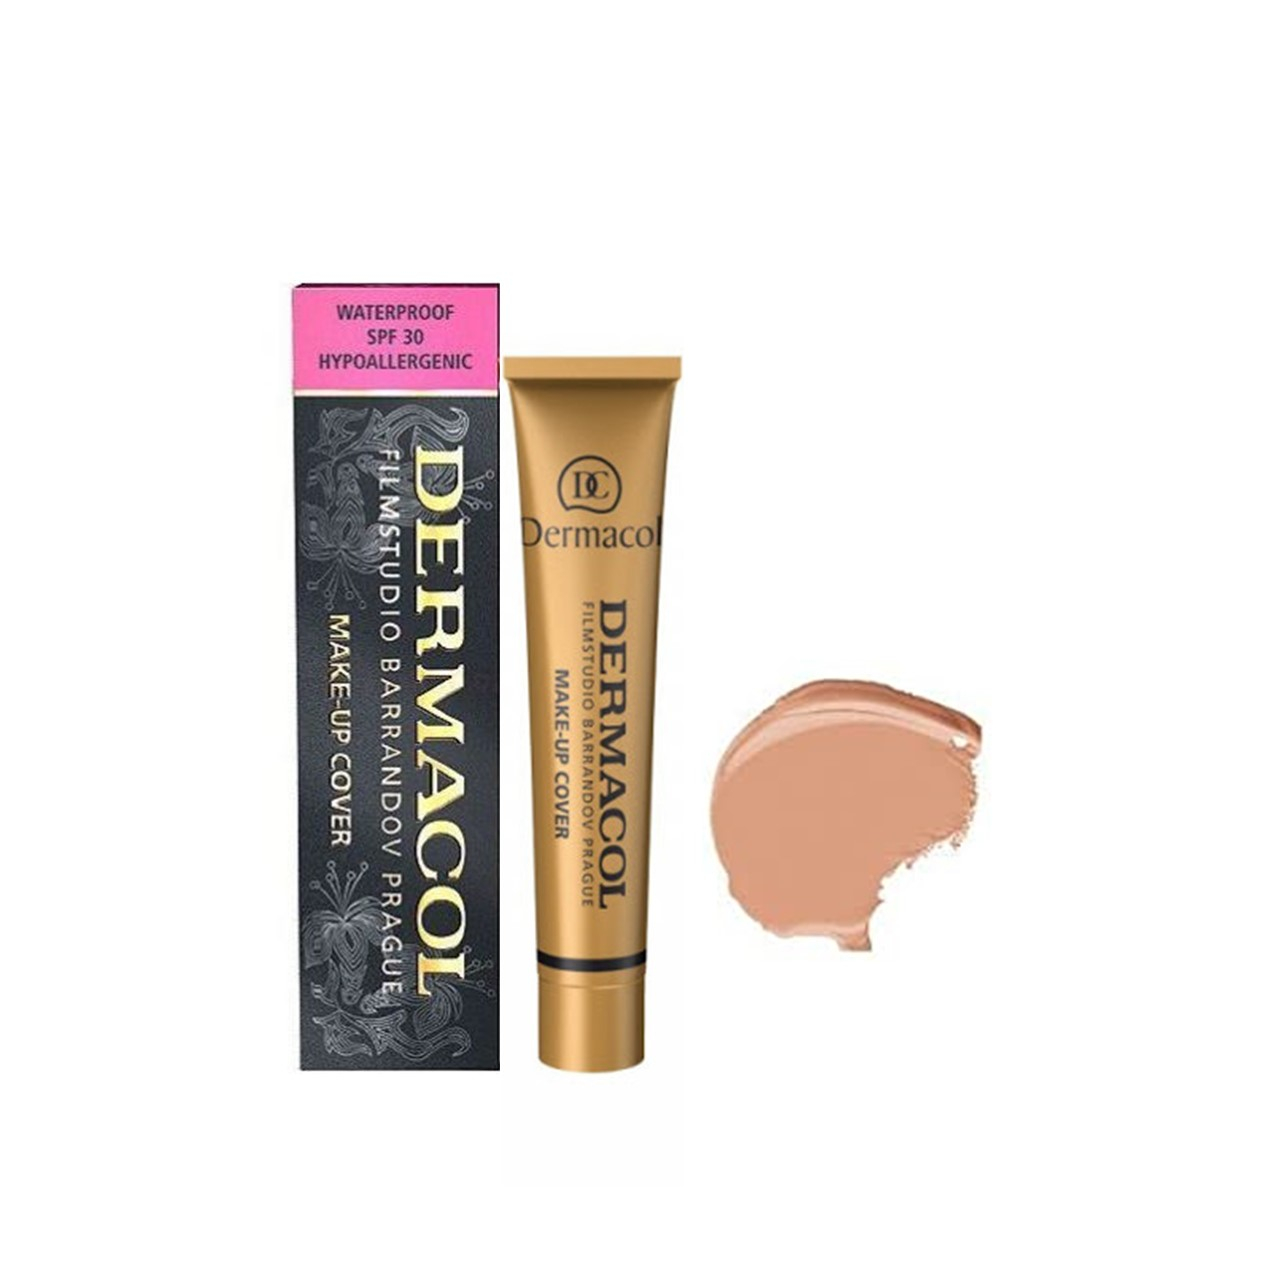 Dermacol Make-Up Cover Foundation SPF30 225 30g (1.06oz)